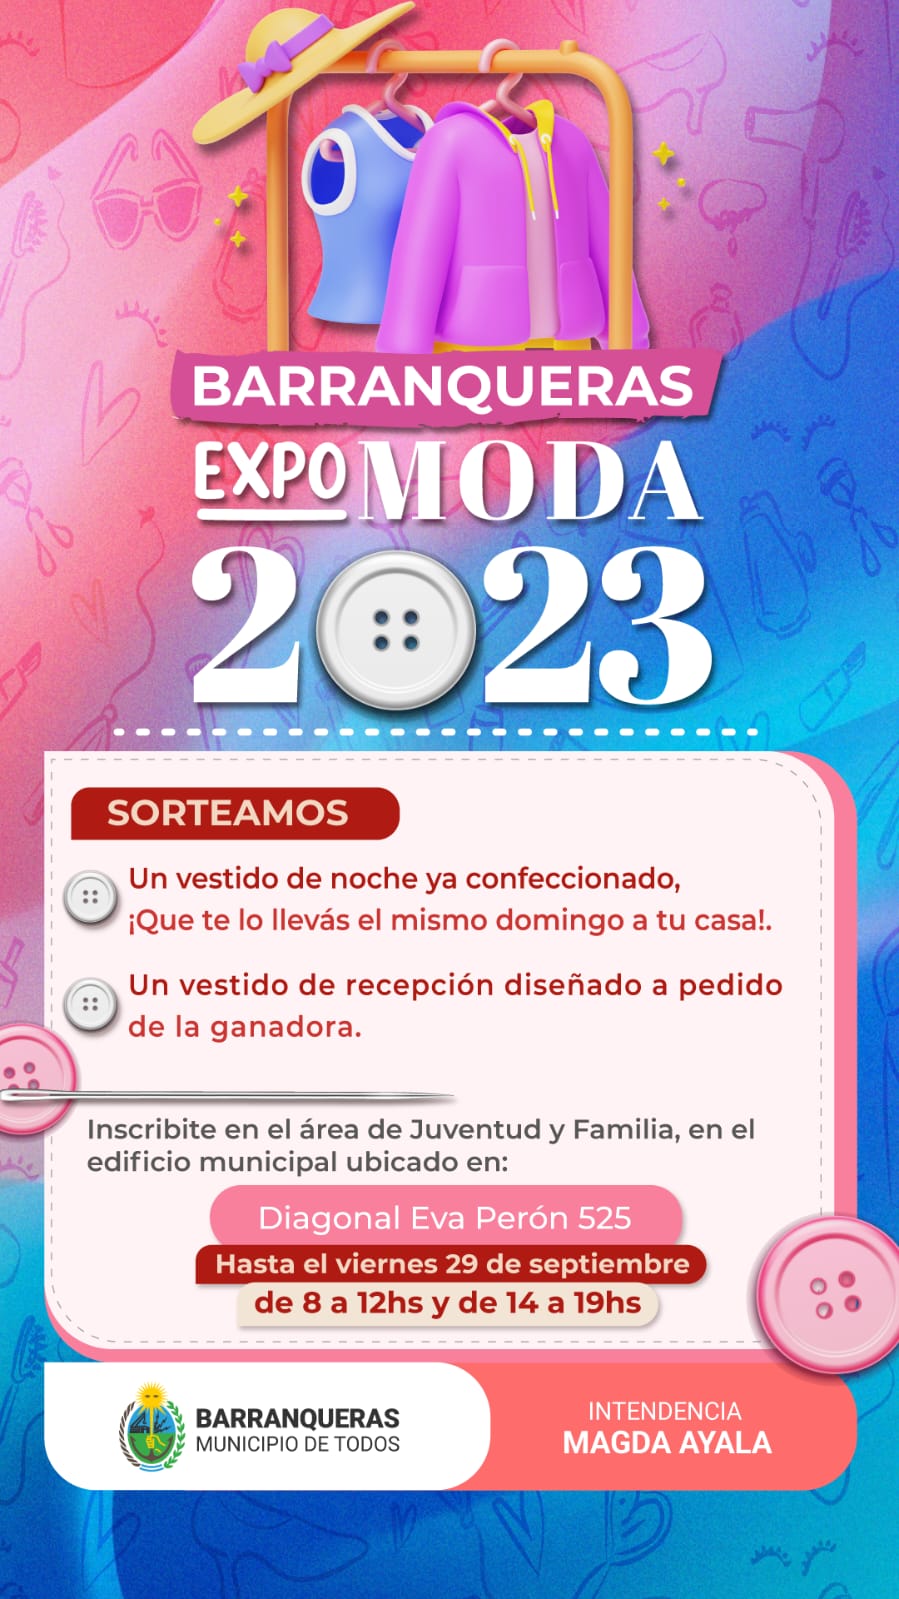 Segunda Expo Moda 2.023 en Barranqueras